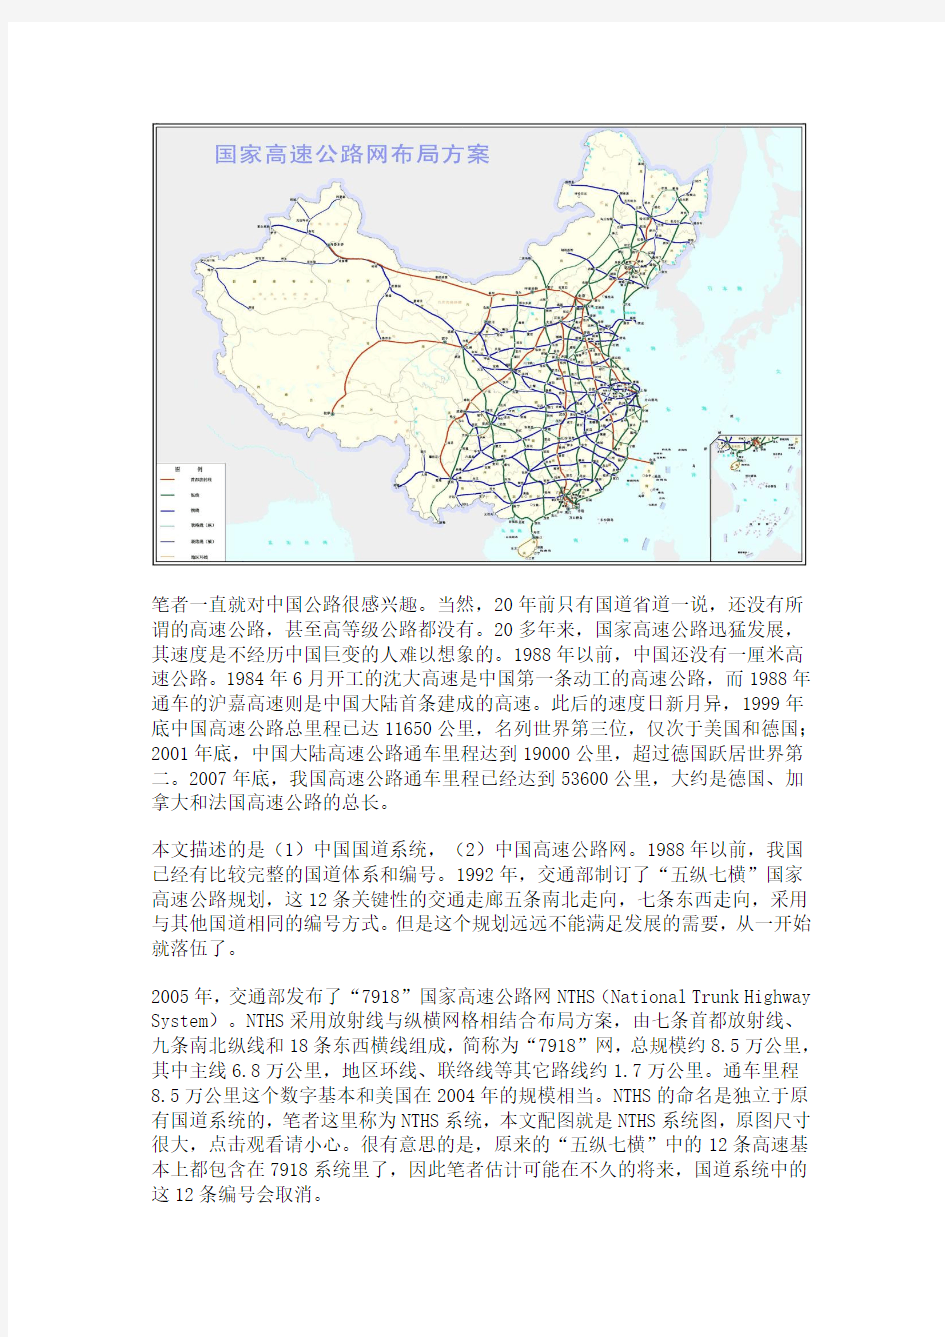 中国的高速公路网和国道网